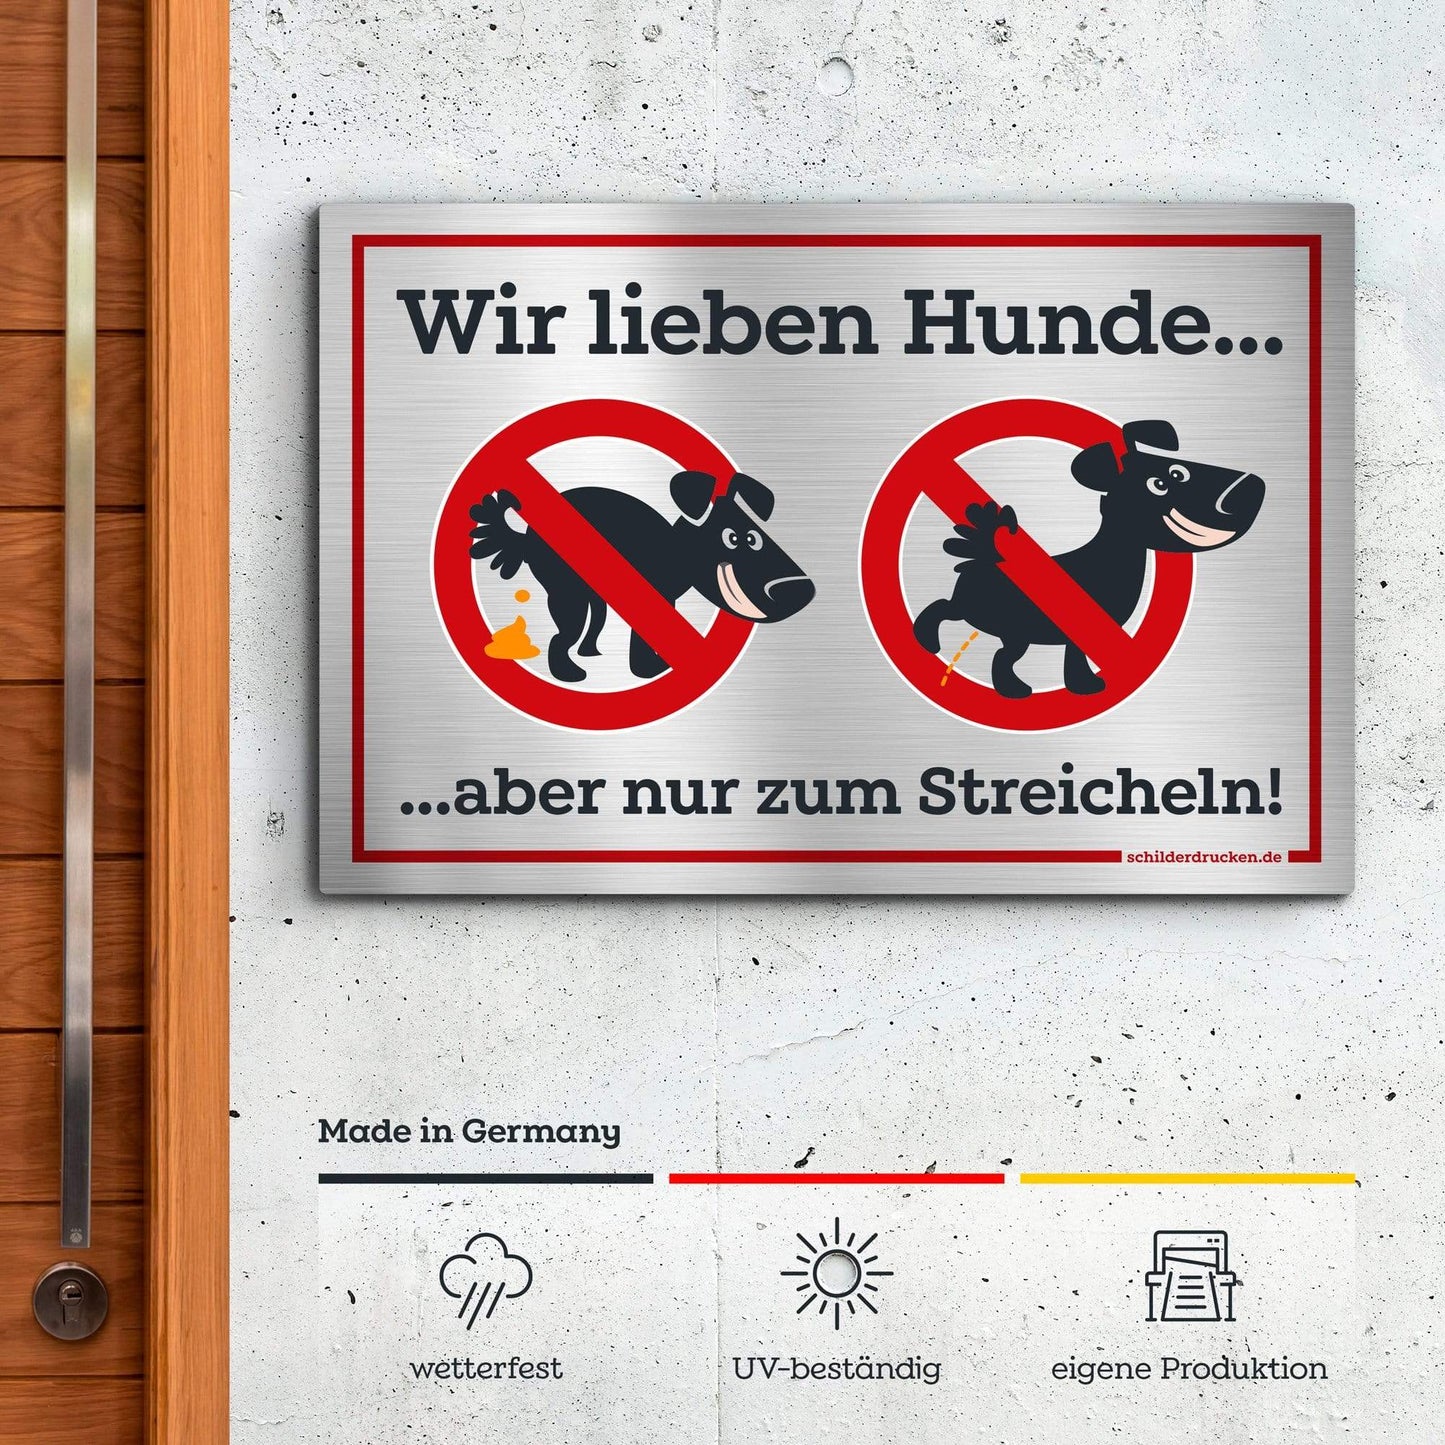 Kein Hundeklo - wir lieben Hunde! 10 x 15 cm / silber gebürstet / Alu-Dibond online drucken lassen bei schilderdrucken.de